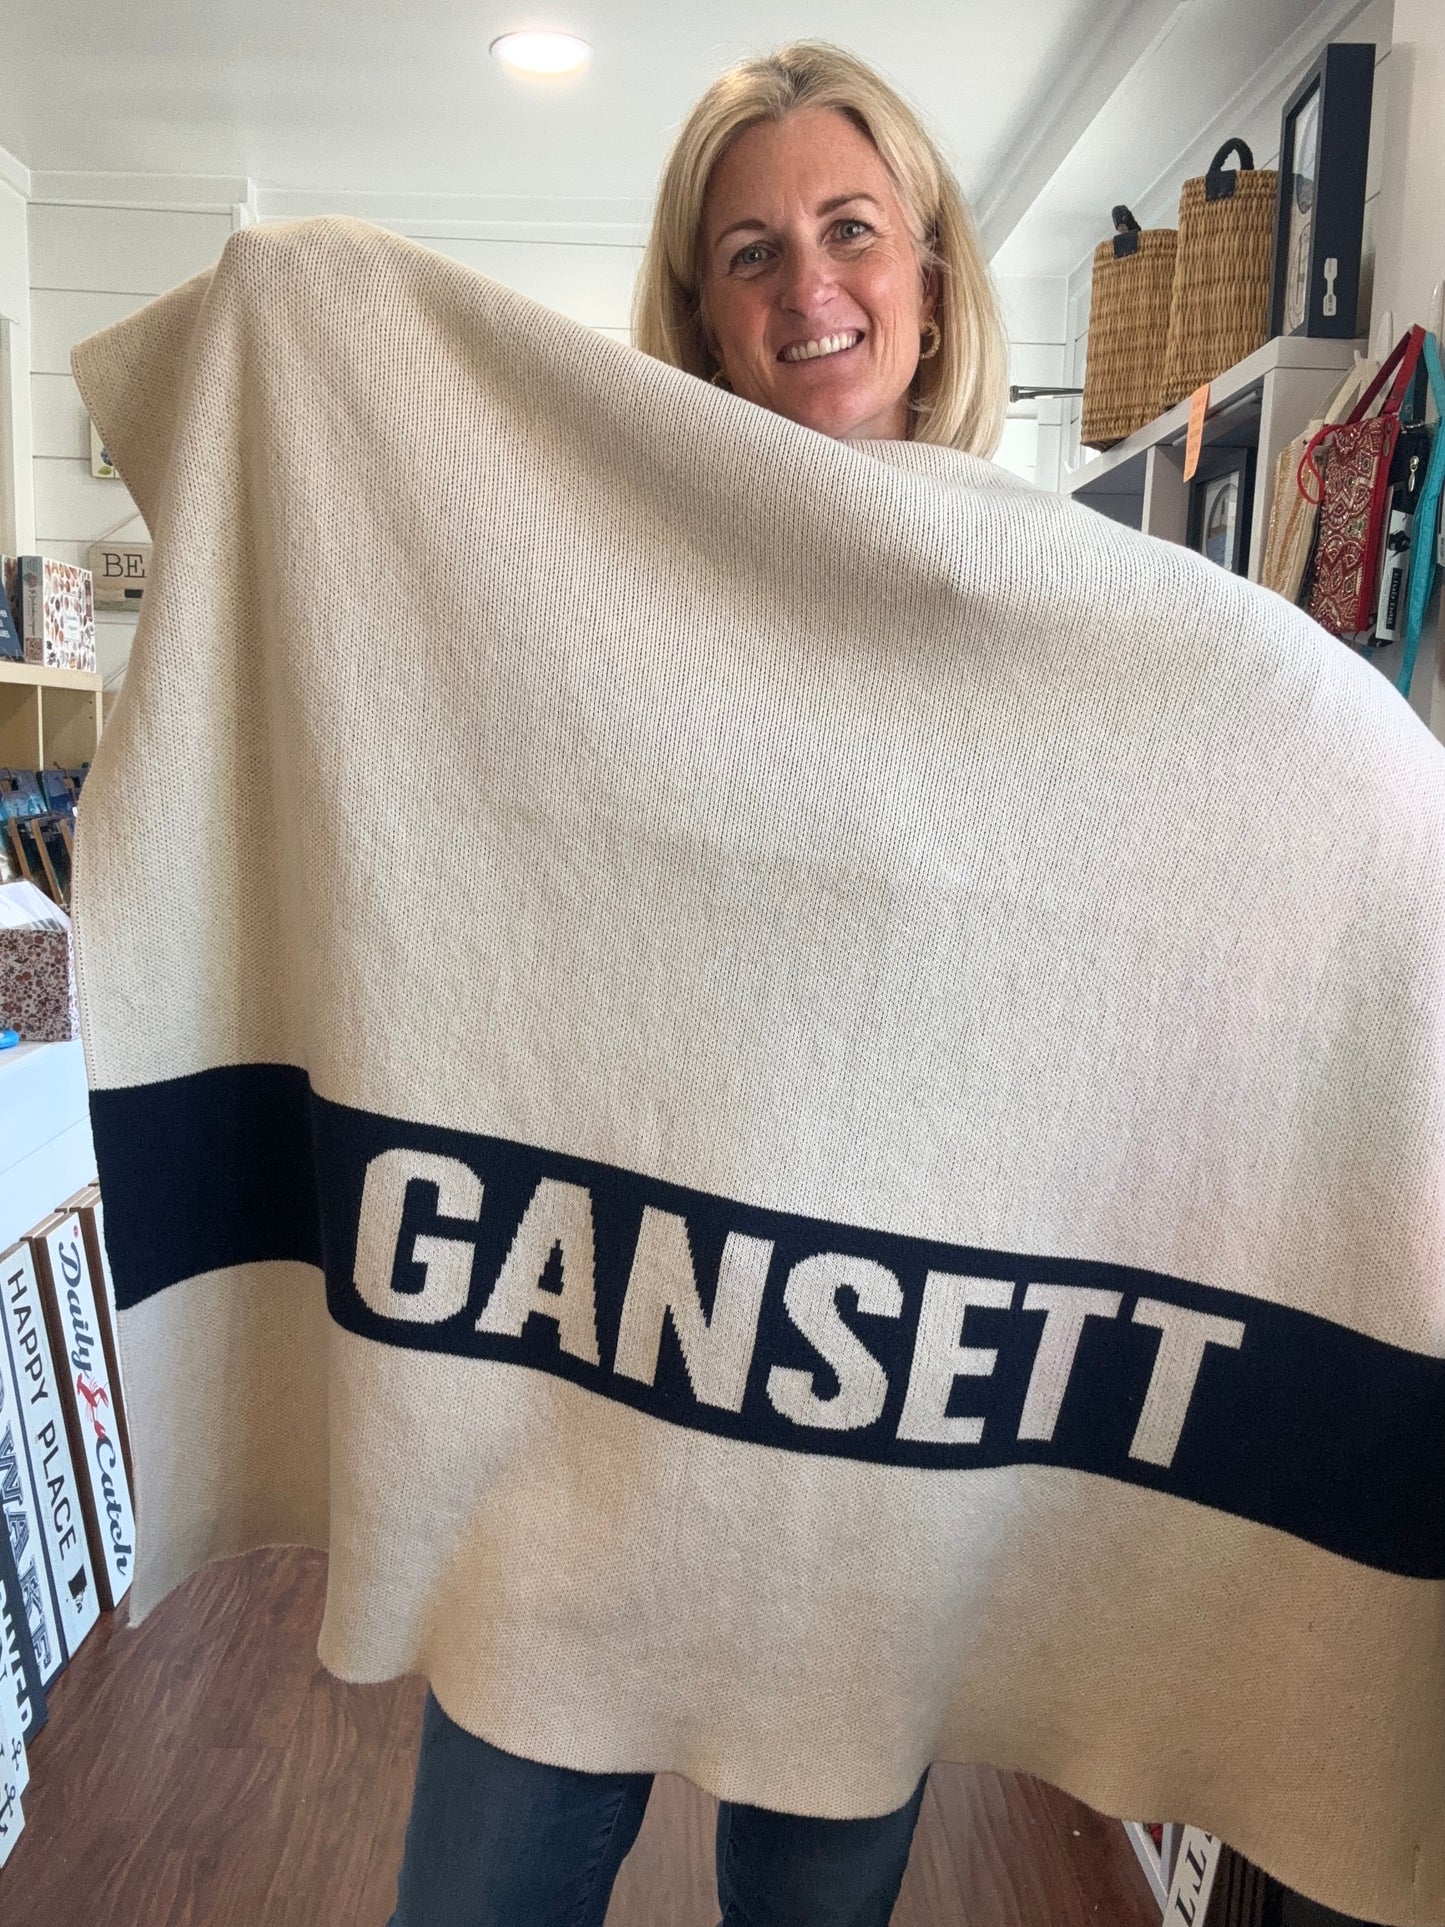 Gansett Blanket